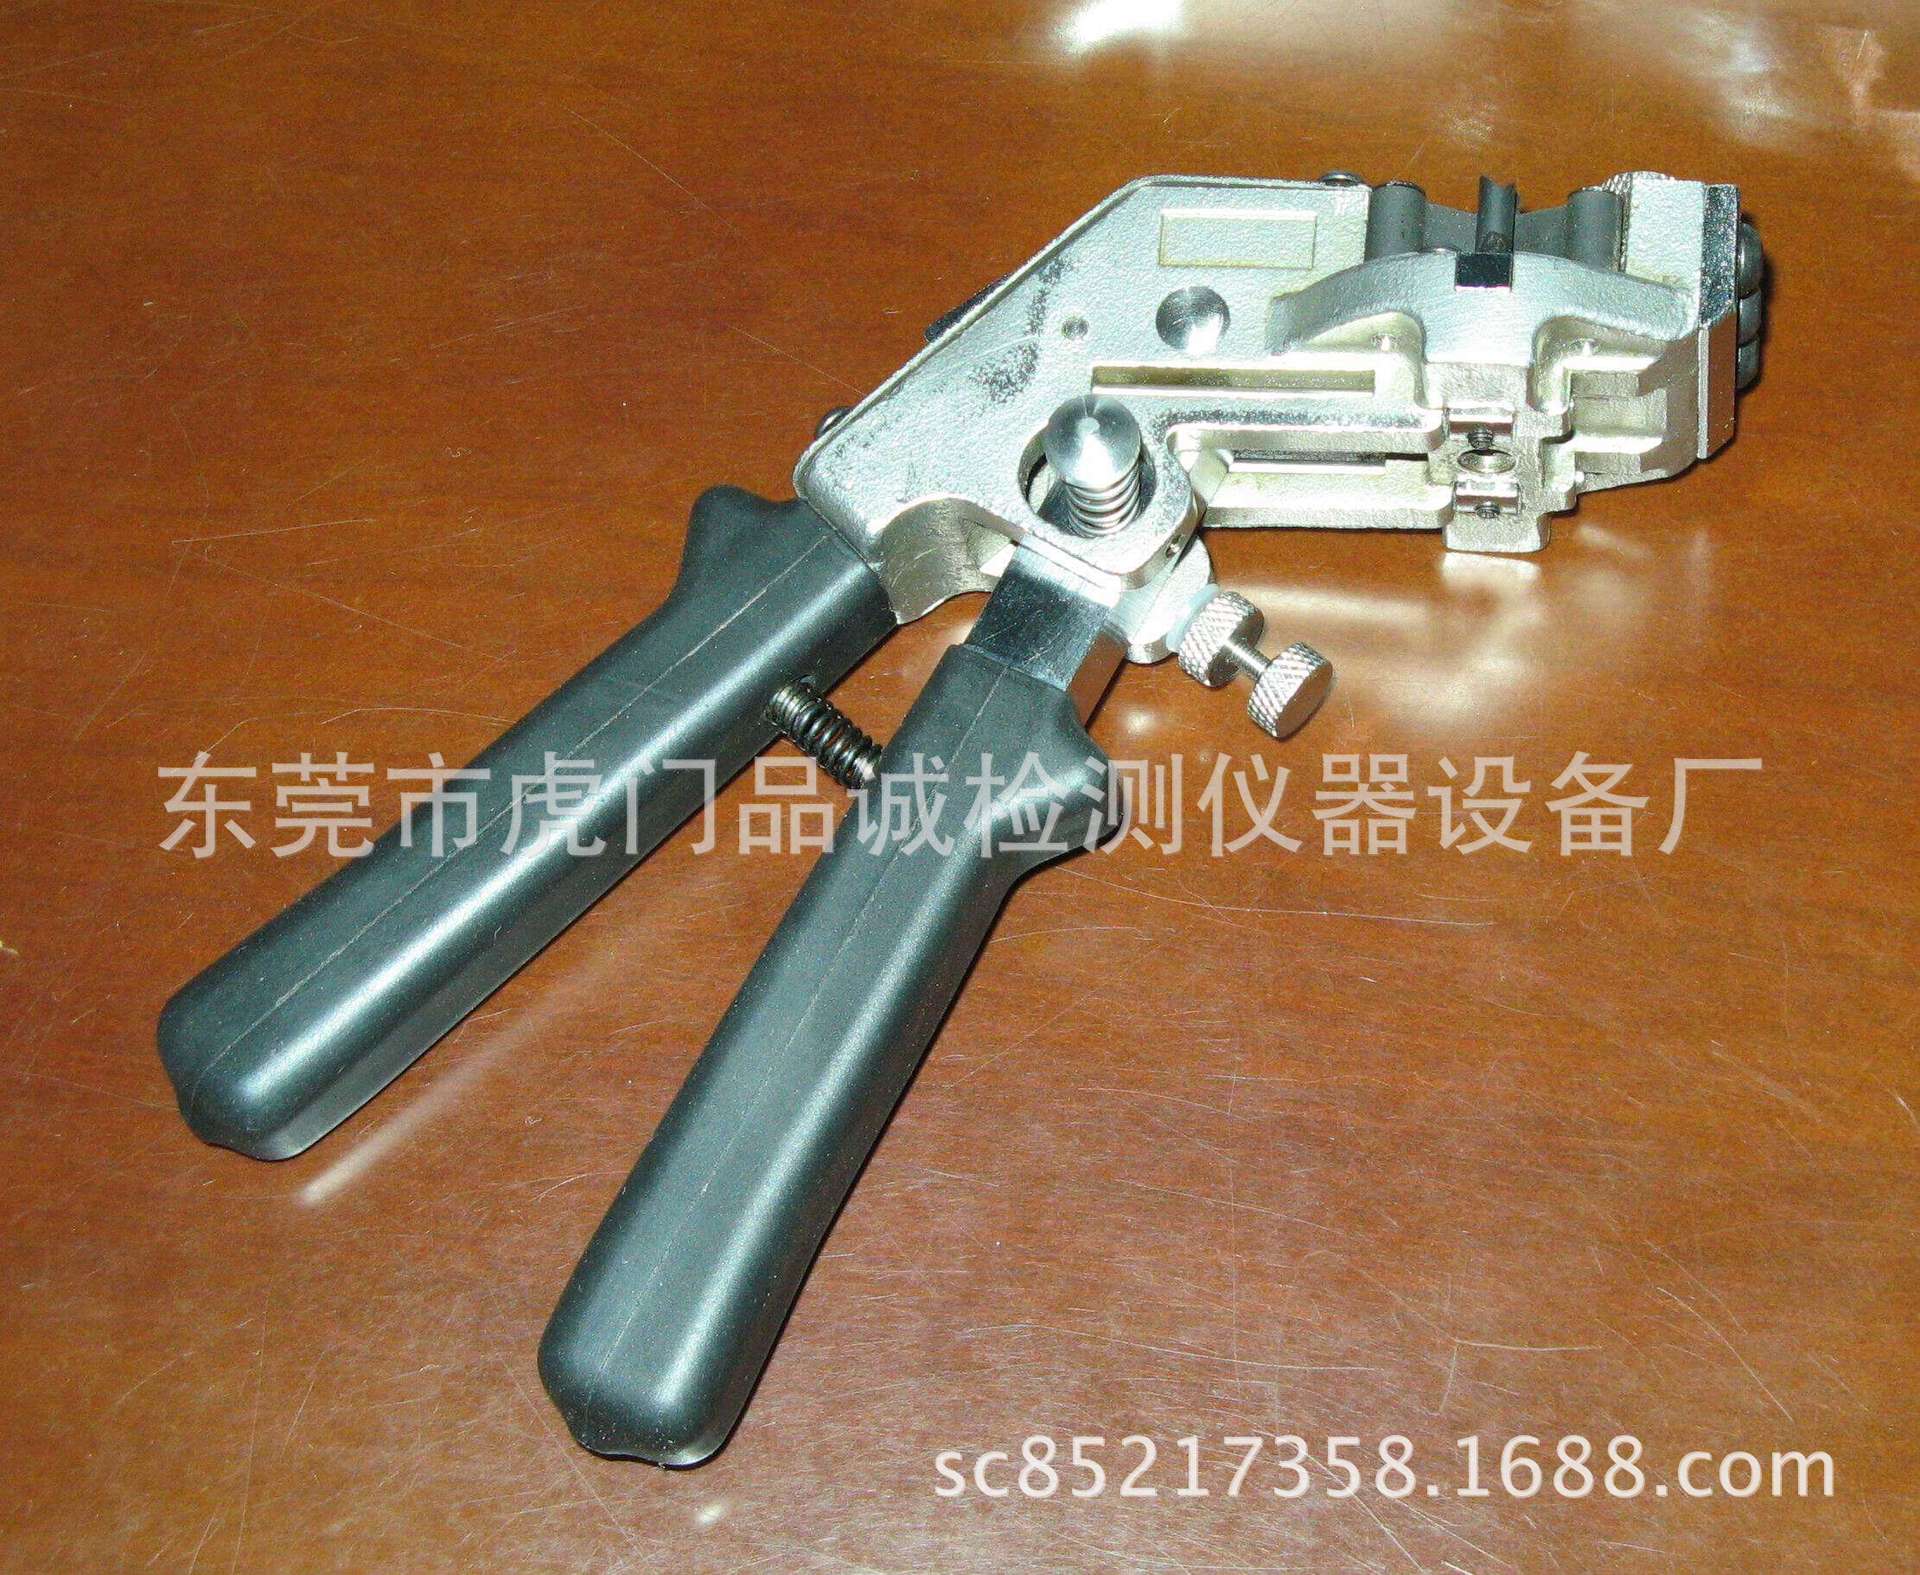 手持式冷焊机 铜线冷焊机 品诚生产碰焊机 接线机示例图2